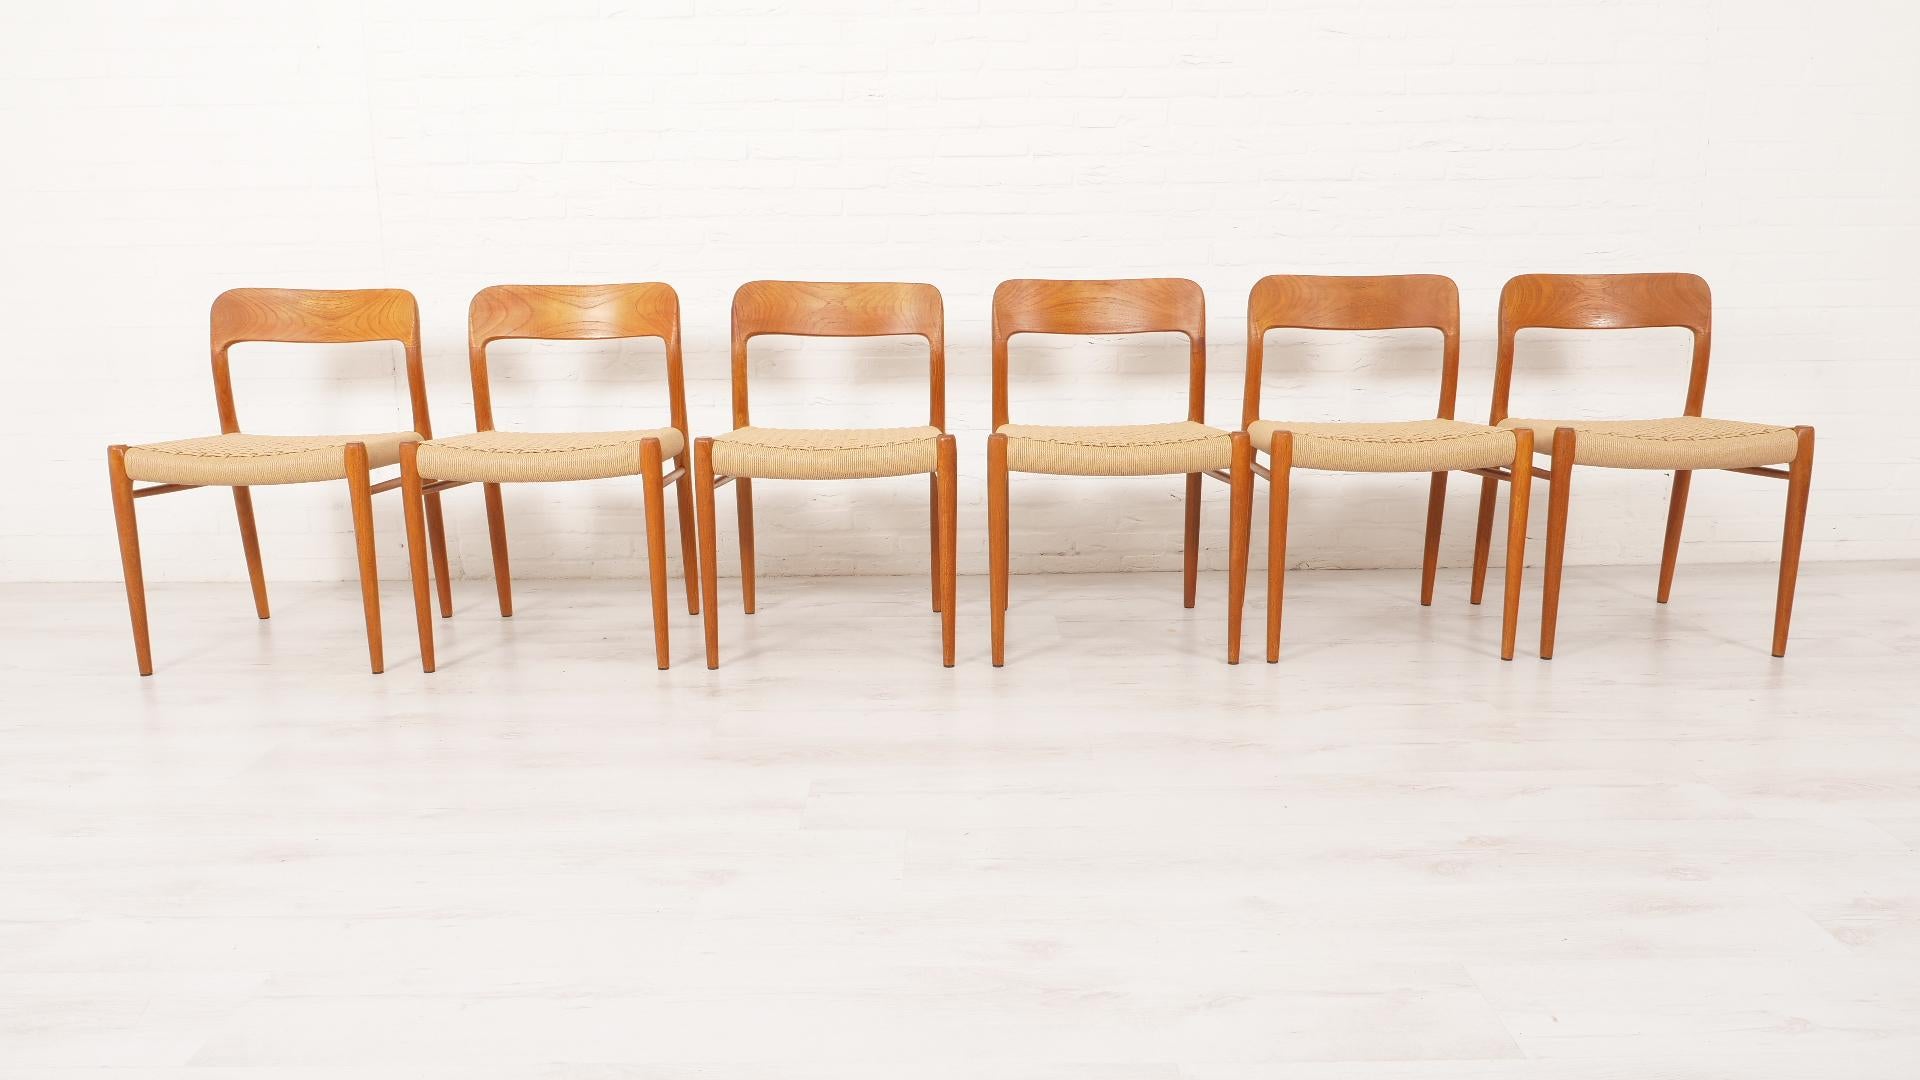 Ensemble de 6 belles chaises de salle à manger vintage danoises. Ces chaises ont été conçues par Niels Otto Møller. Les chaises sont finies en teck et équipées de nouveaux cordons en papier.

Période de conception : 1950 - 1960
Style : Mid-century